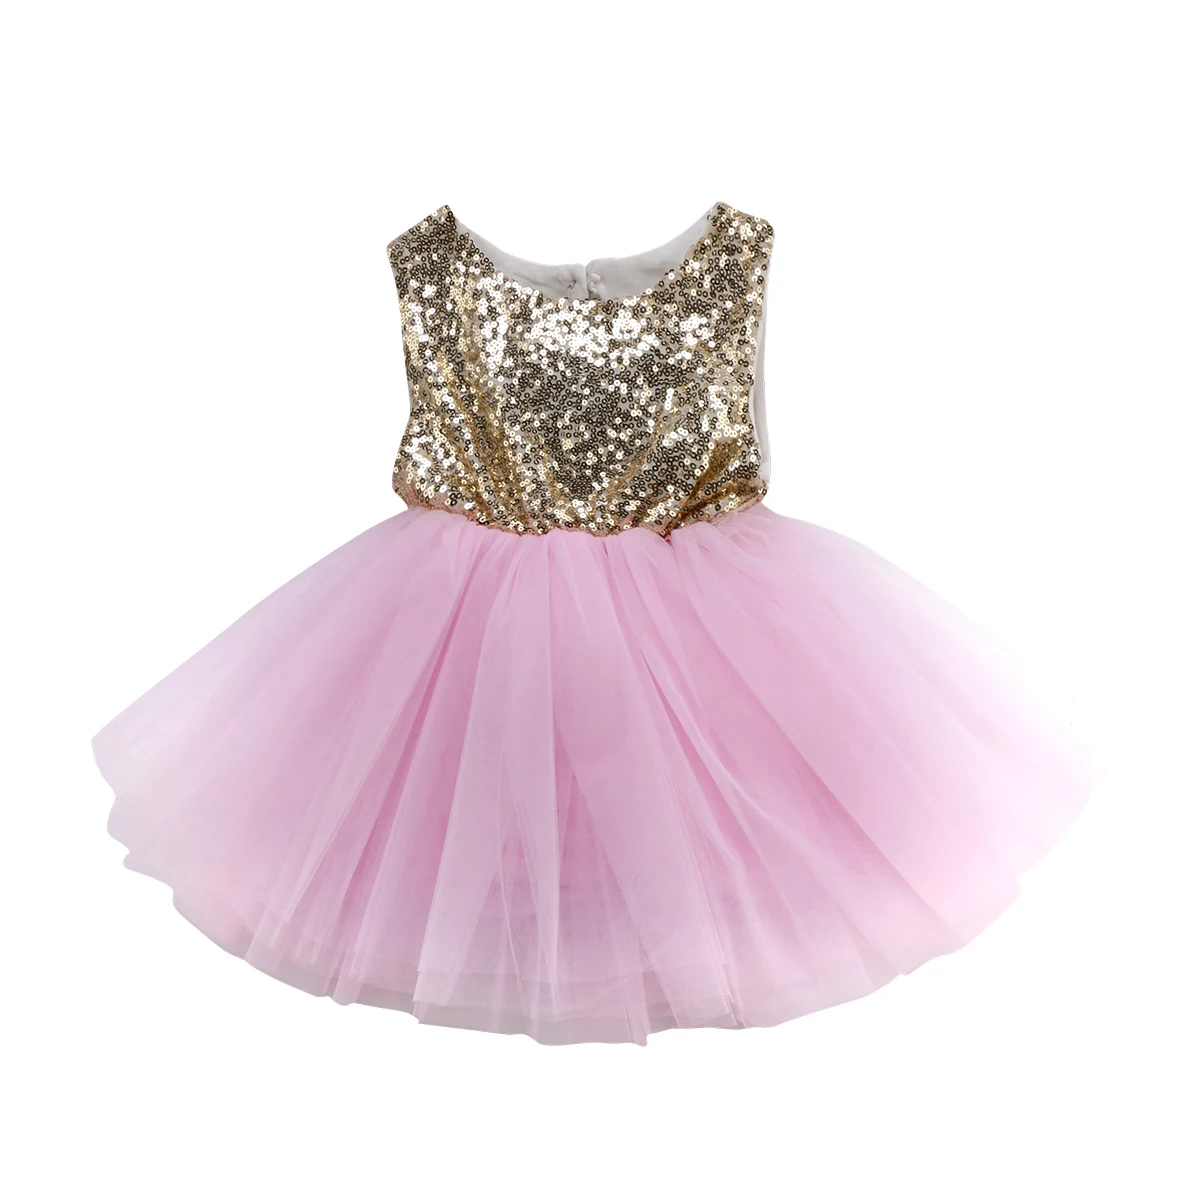 Принцесса Платье для малышей для праздничное платье для девочки свадебное платье без рукавов, расшитое блестками, для вечеринки, дня рождения; платье для крещения крестильное платье для детей летние платья для девочек - Цвет: Розовый